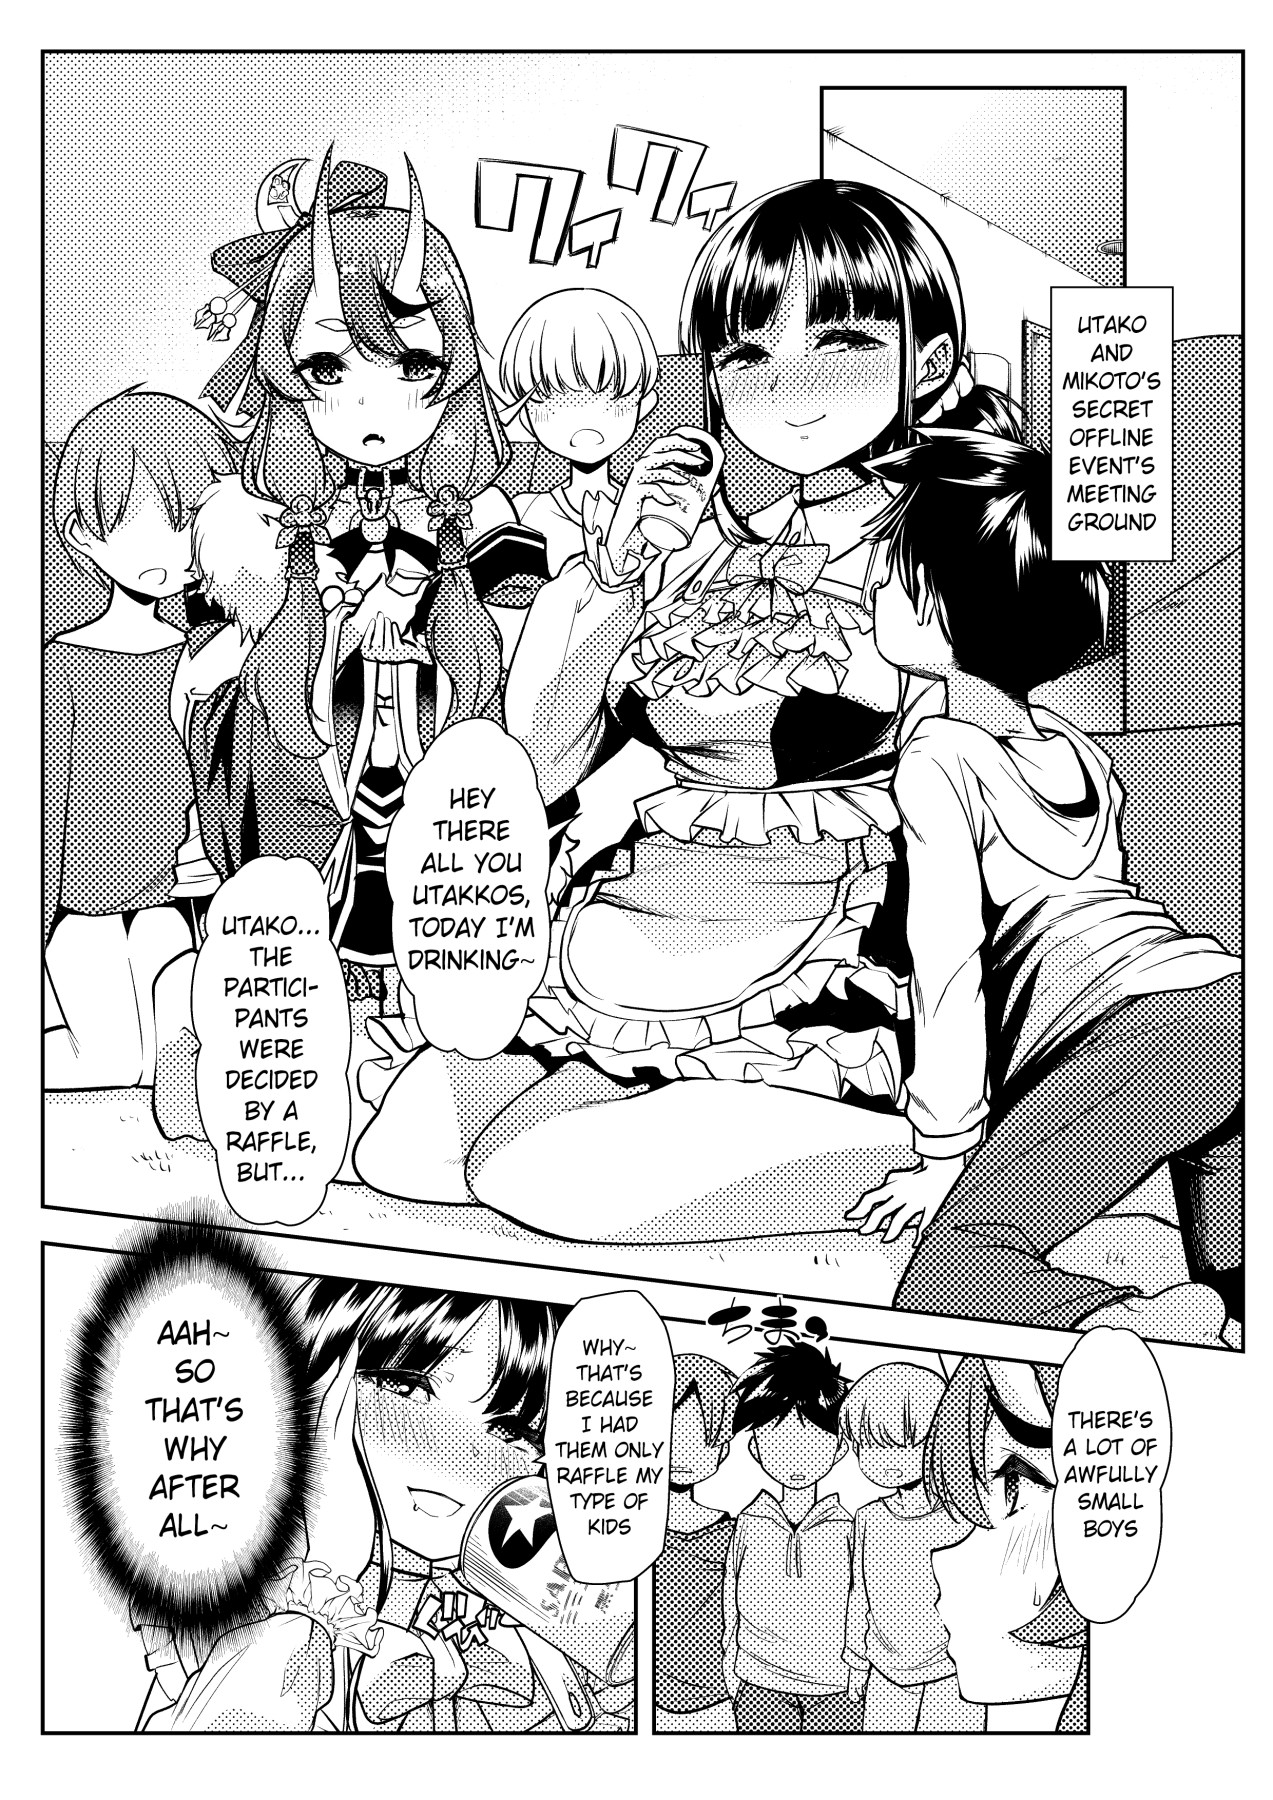 Hentai Manga Comic-Rindou Mikoto and Suzuka Utako's King Game between Shotas and Bad Adults-Read-2